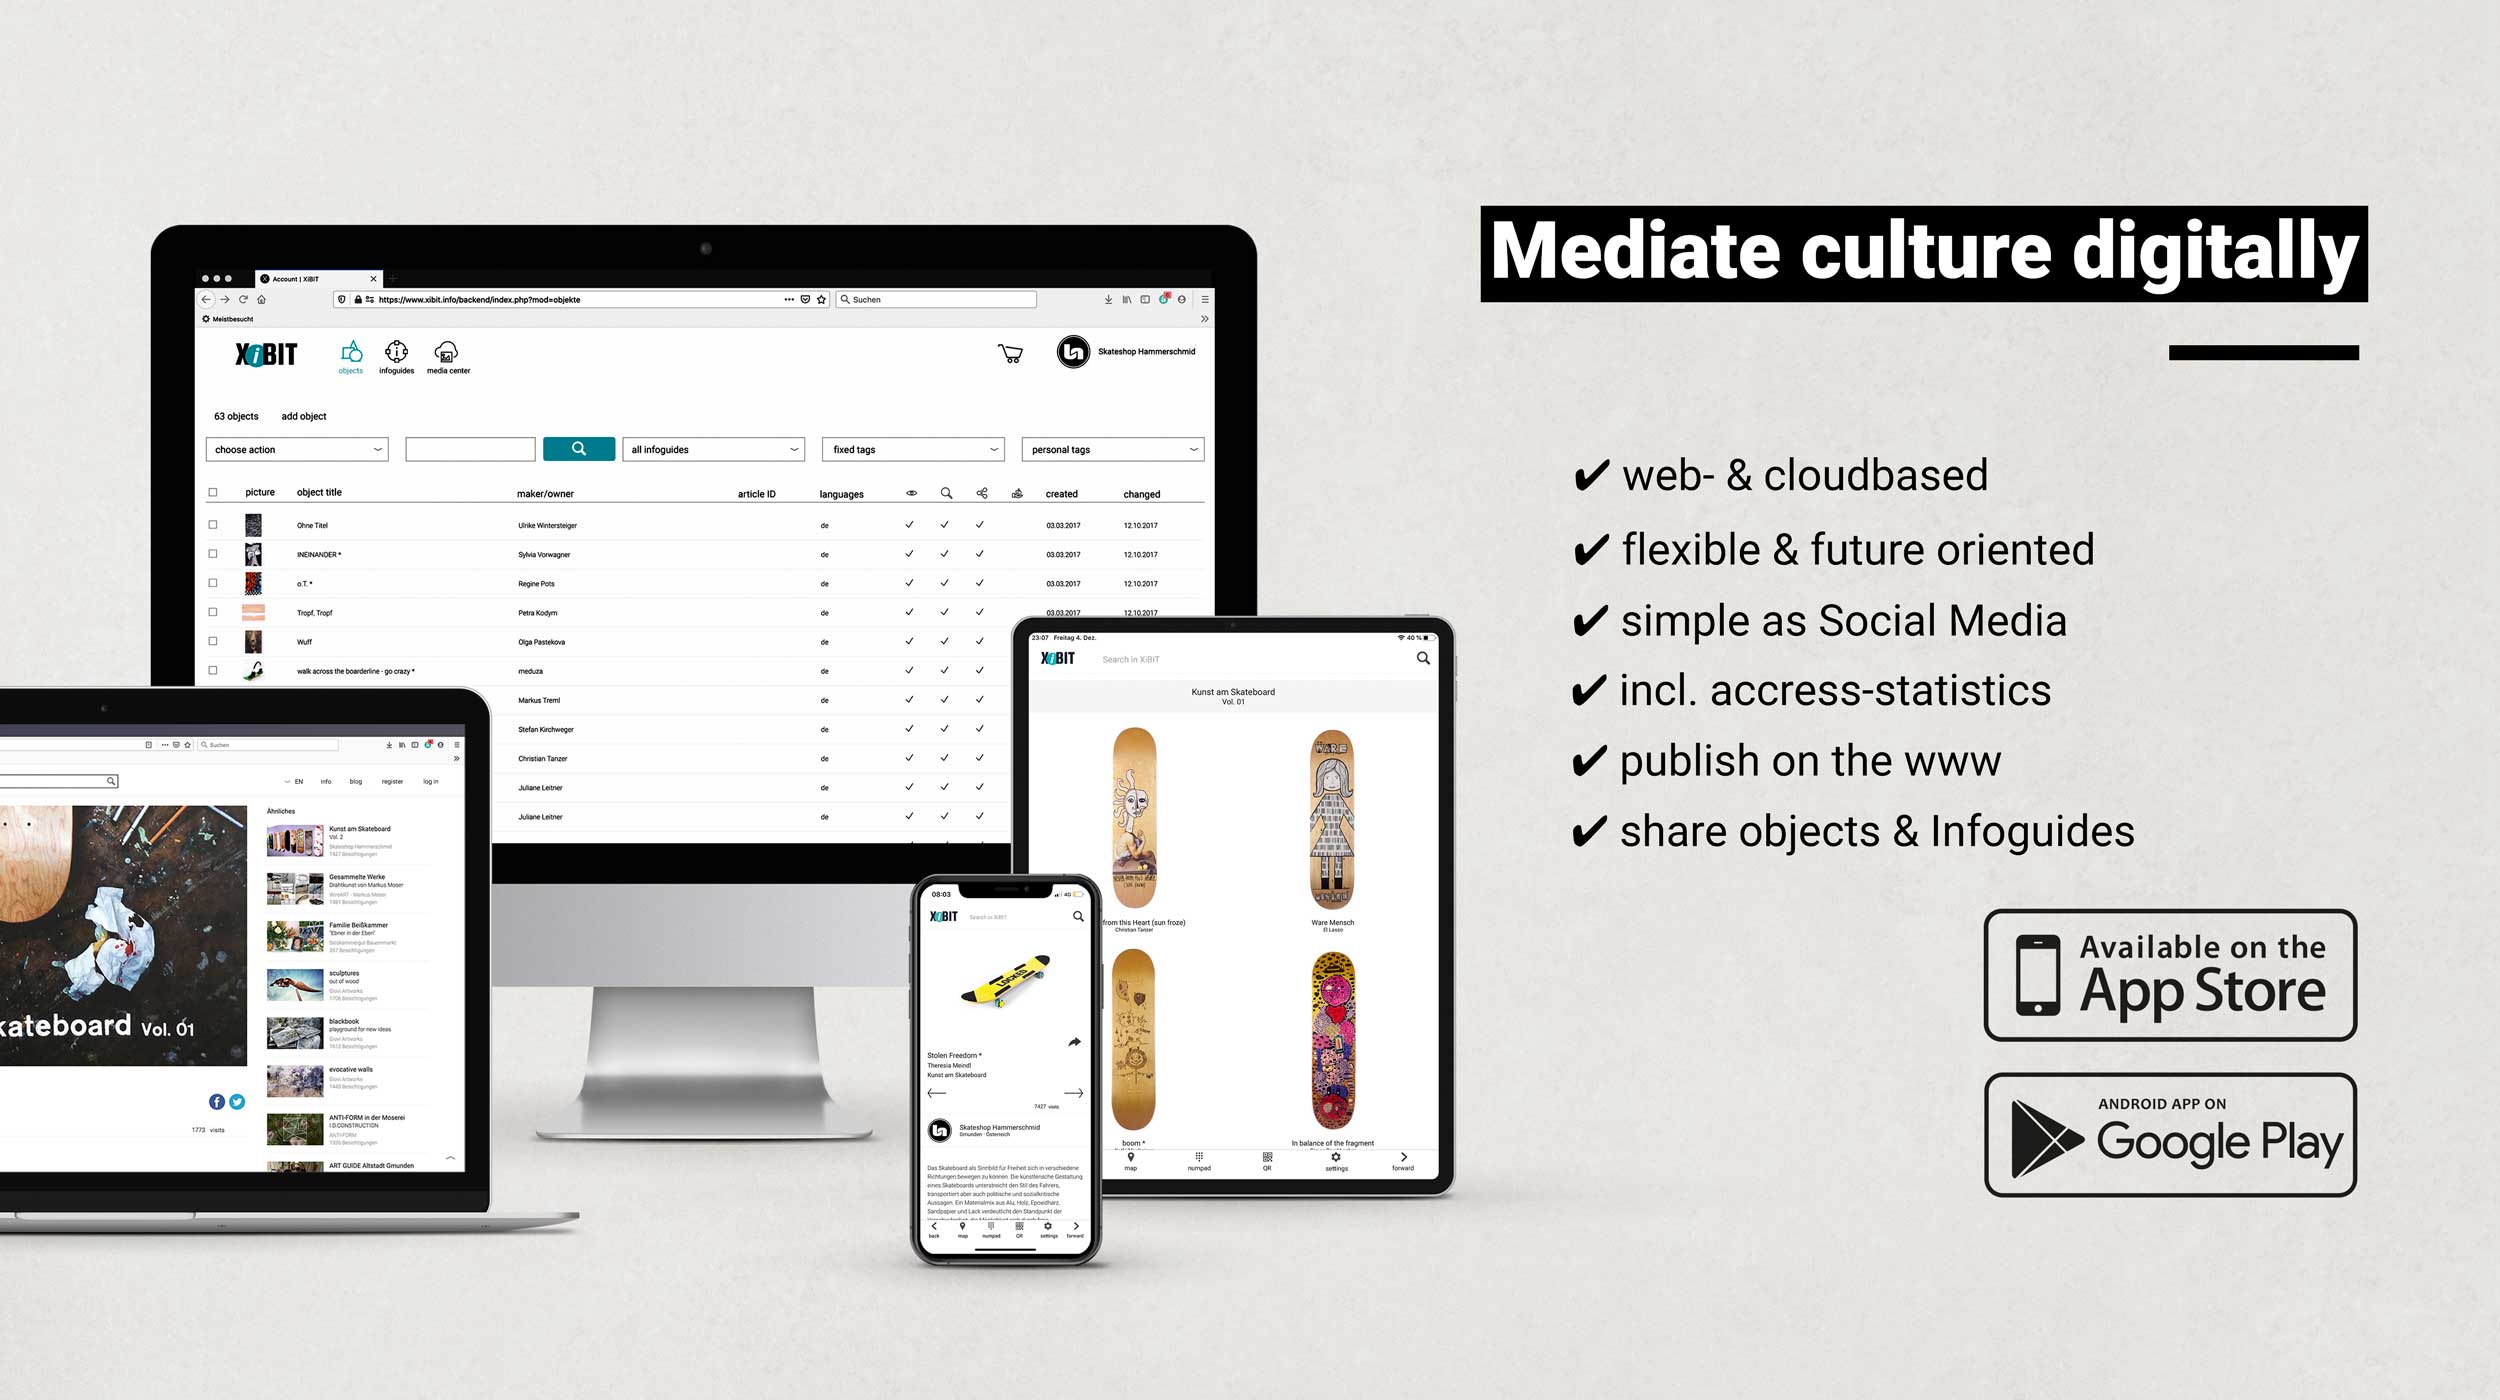 Mediate culture digitally - Screens